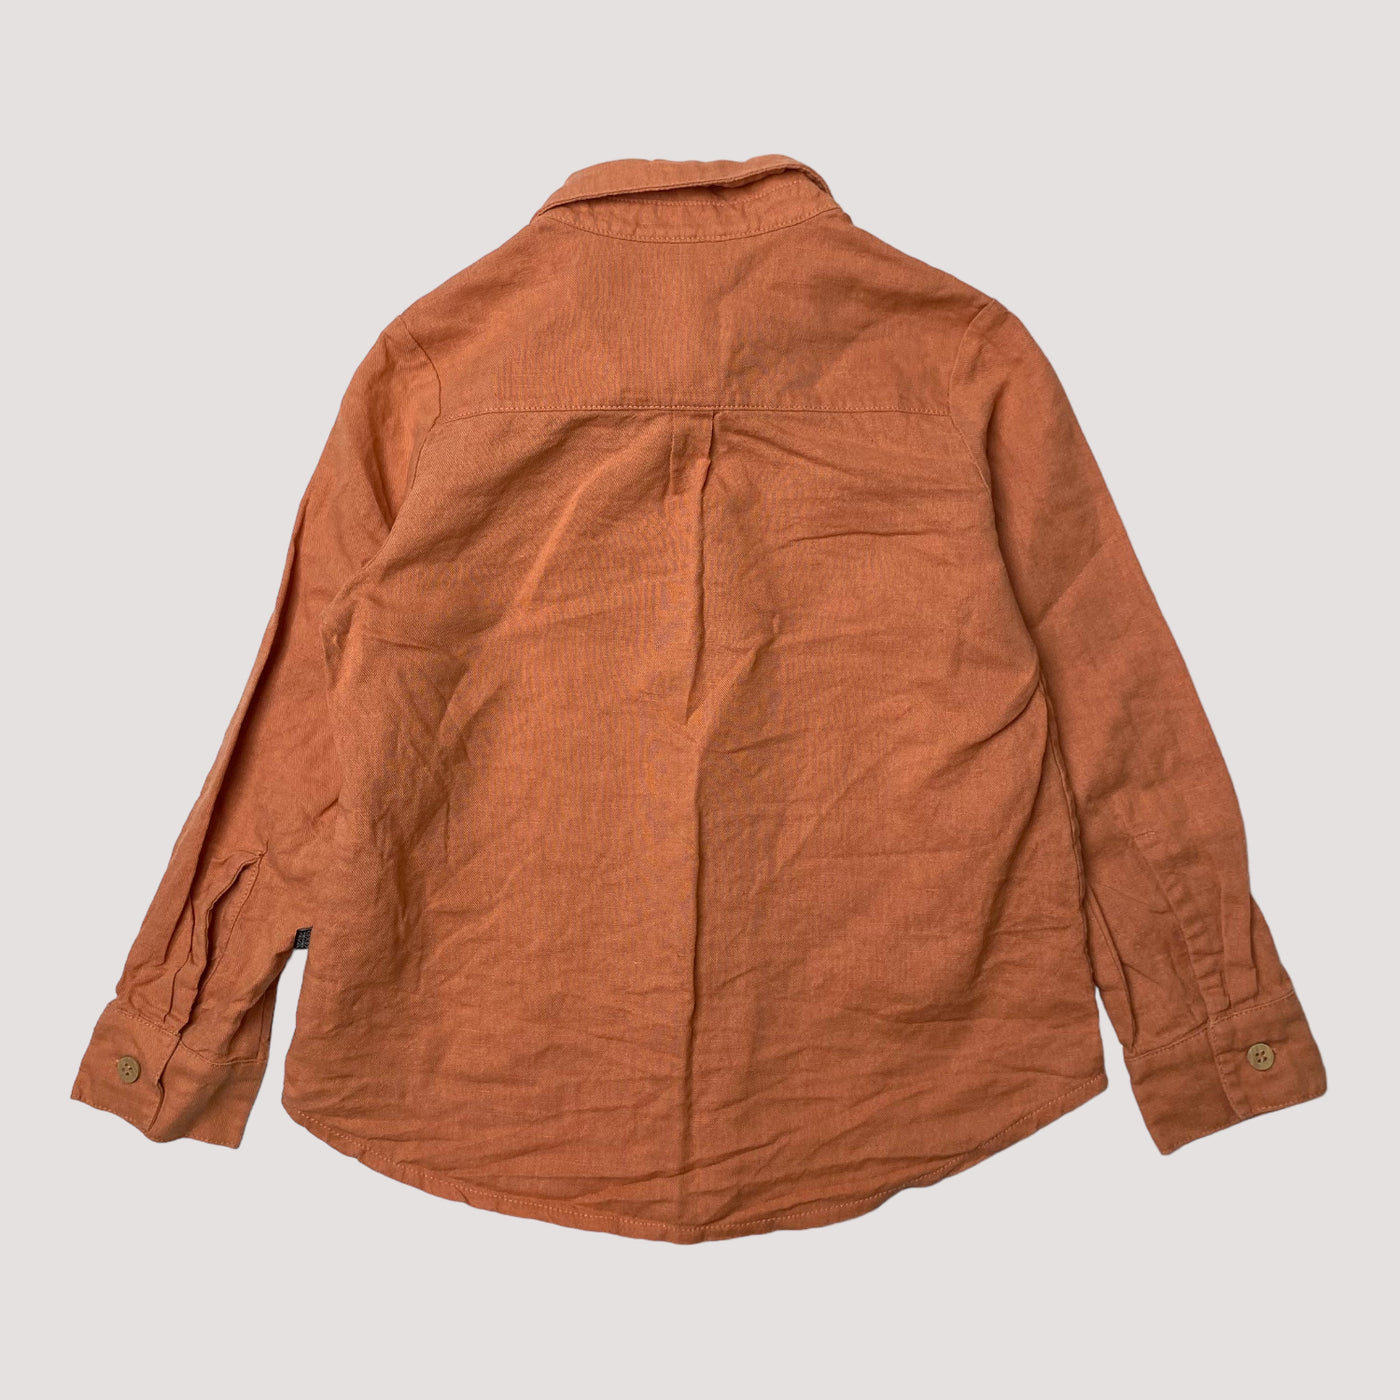 Kaiko linen shirt, peach | 86/92cm